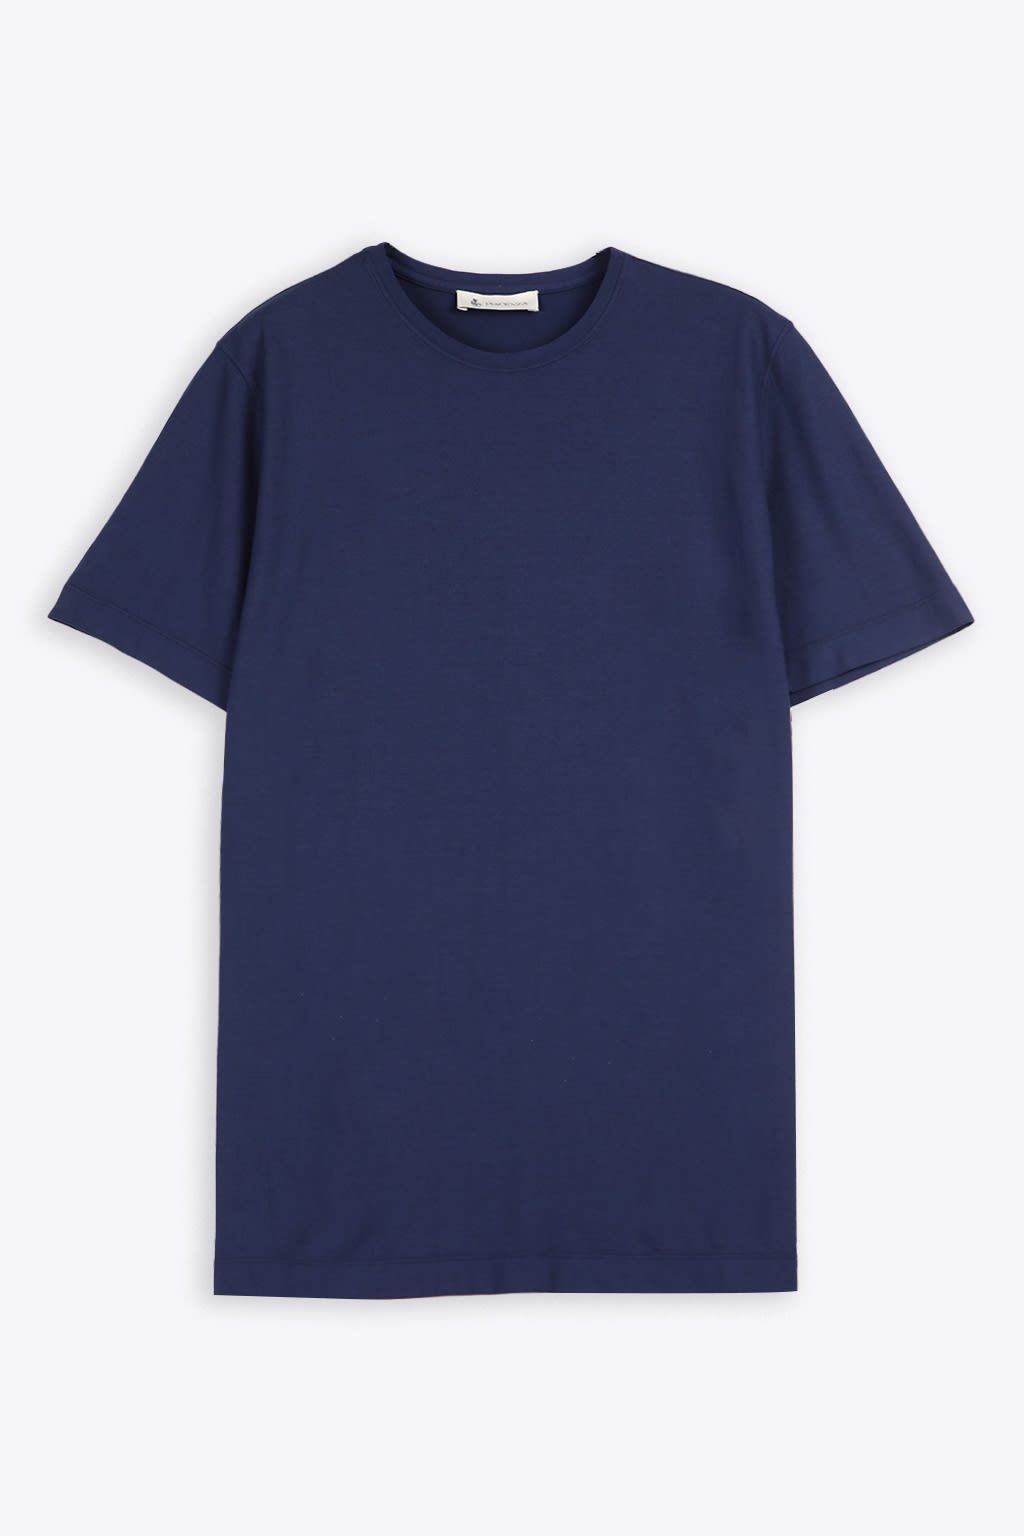 T-shirt Blue cotton regular t-shirt